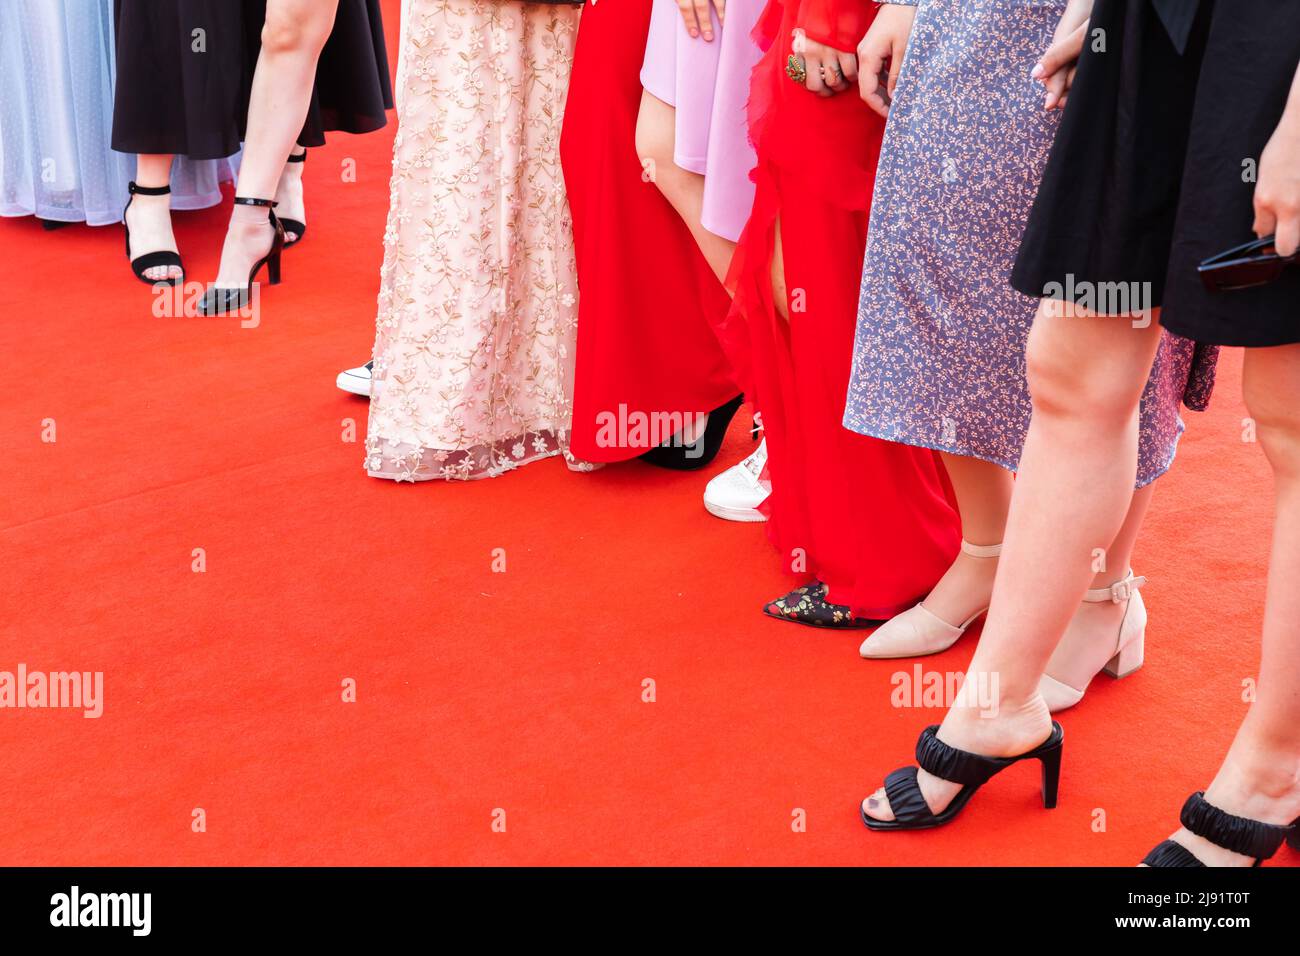 Pieds de proéminent invités, les filles se tiennent sur un tapis rouge, photo de gros plan Banque D'Images